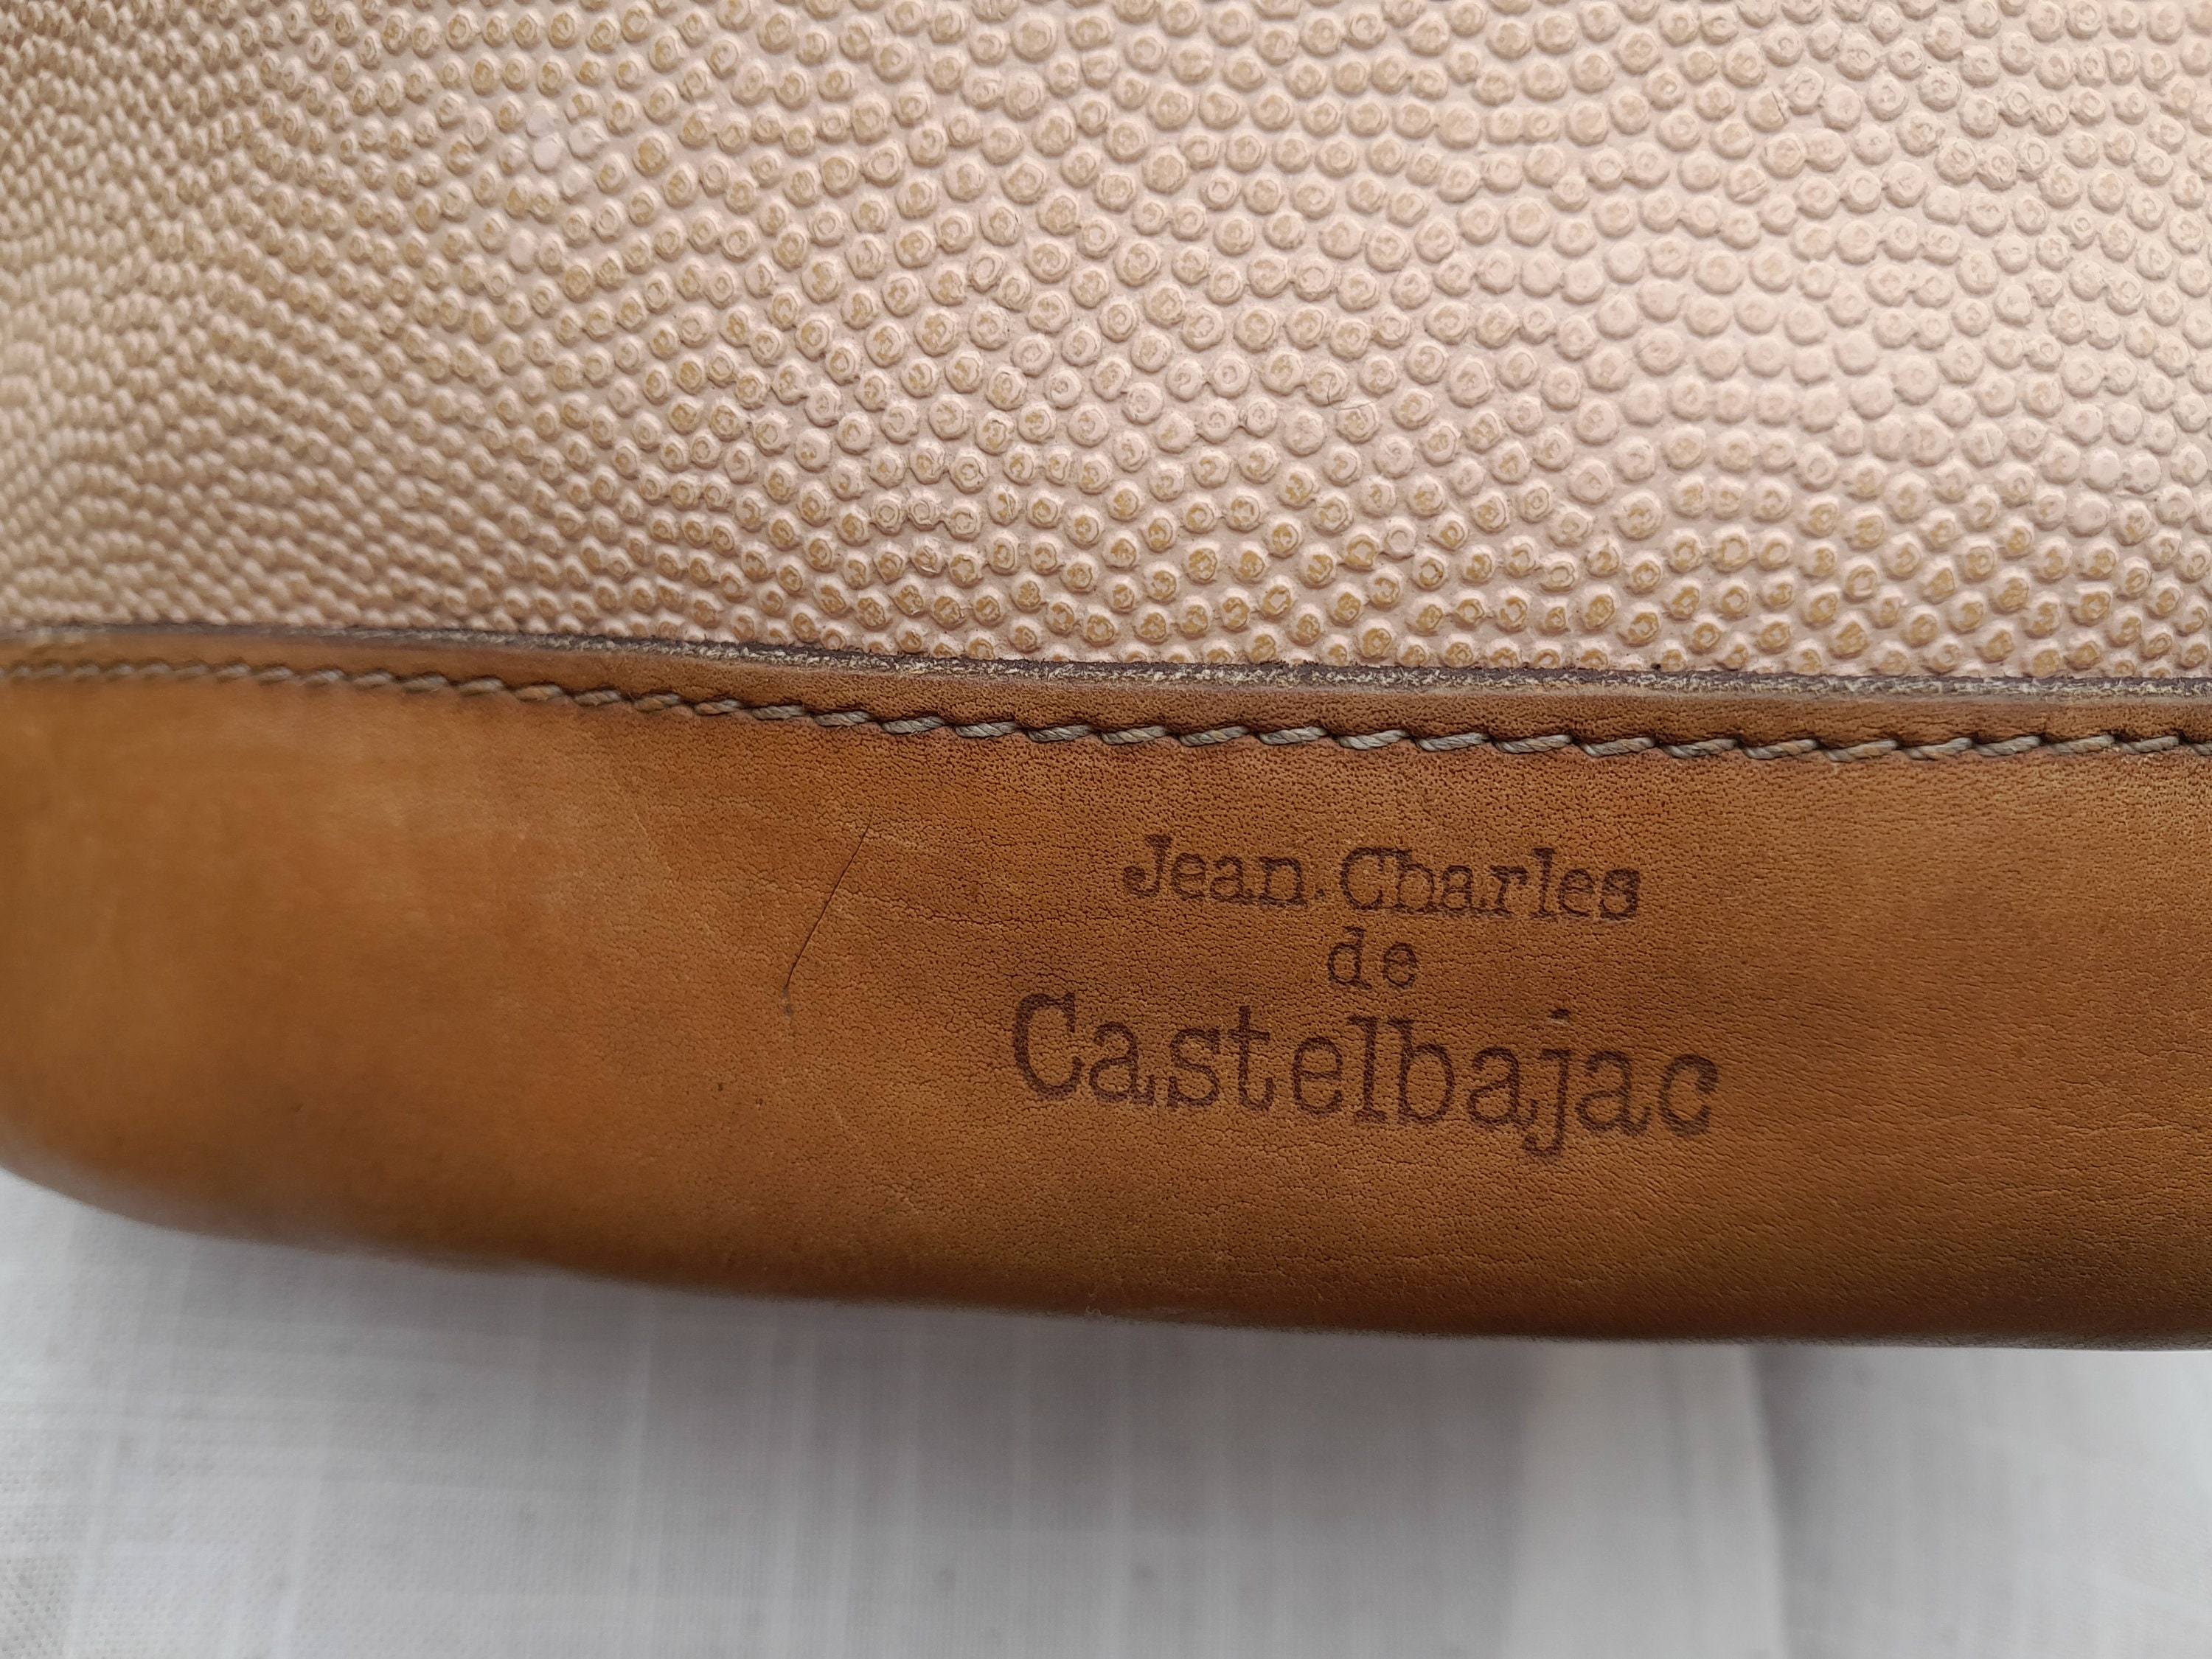 Jean Charles De Castelbajac Shoulder Bag Made in France